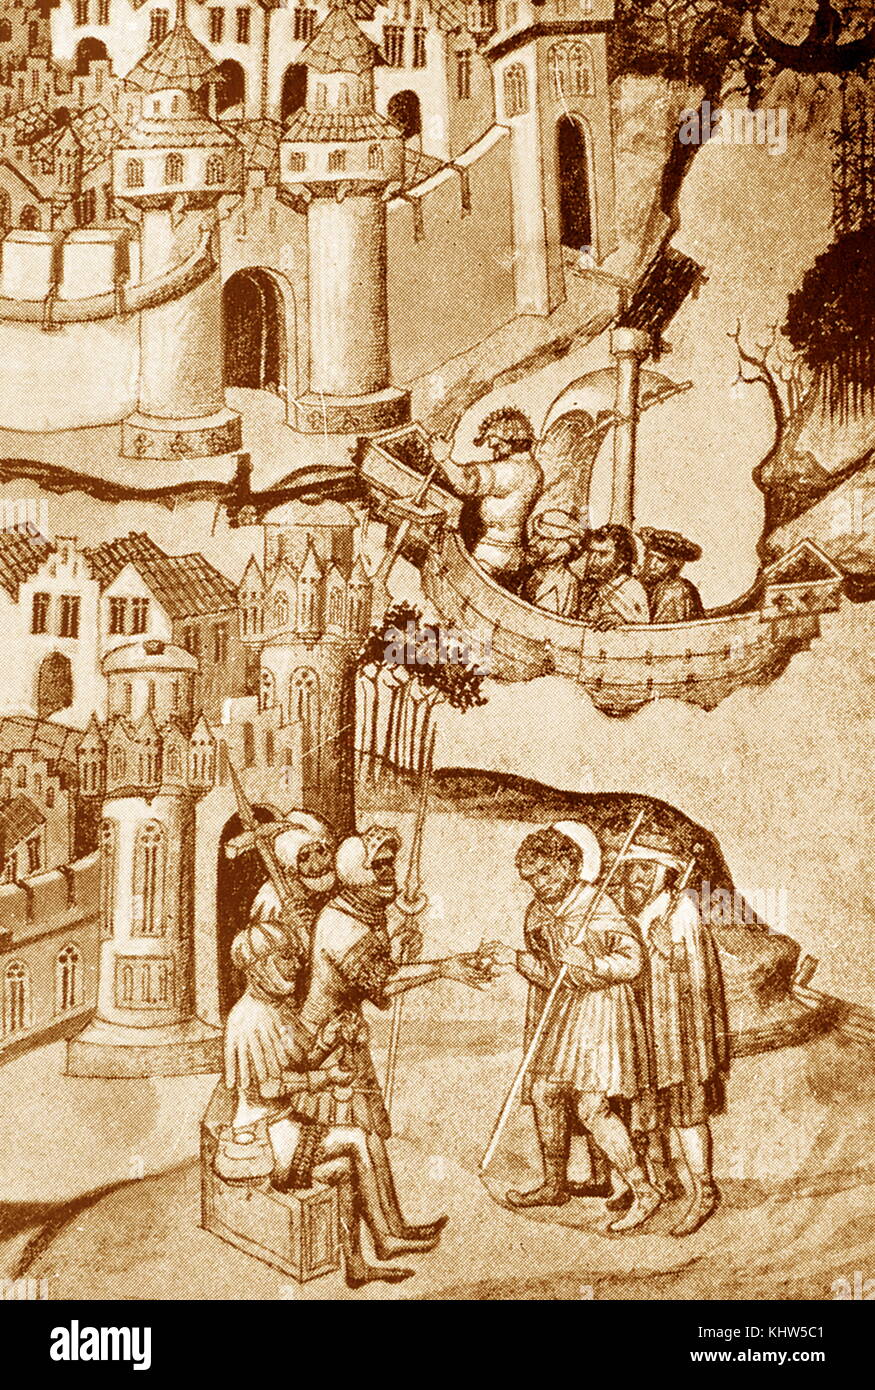 Grabado representando a los peregrinos de Europa (arriba); y el pago de un peaje en el aterrizaje en Palestina (abajo). Fecha del siglo XV. Foto de stock